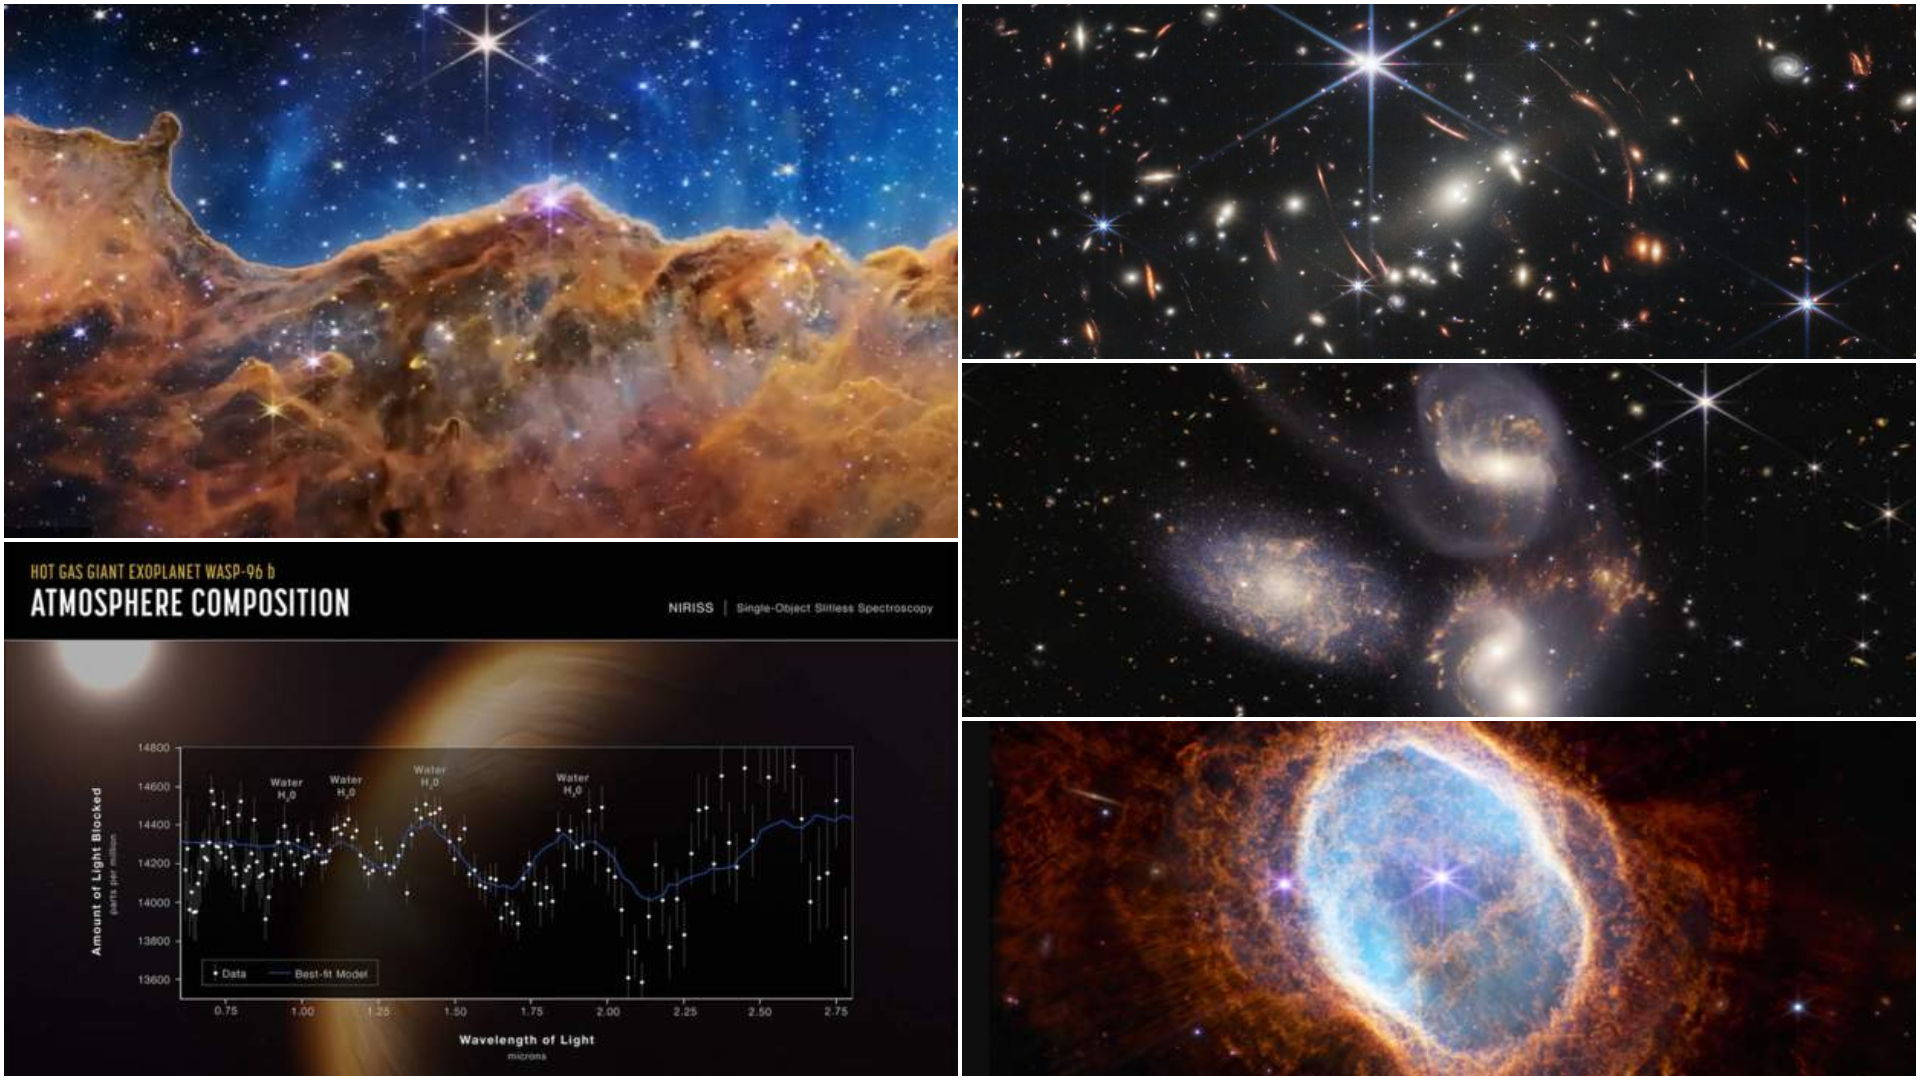 I found it Junior somewhat NASA prezintă primele imagini clare și în profunzime ale Universului,  realizate de telescopul James Webb. LIVE VIDEO